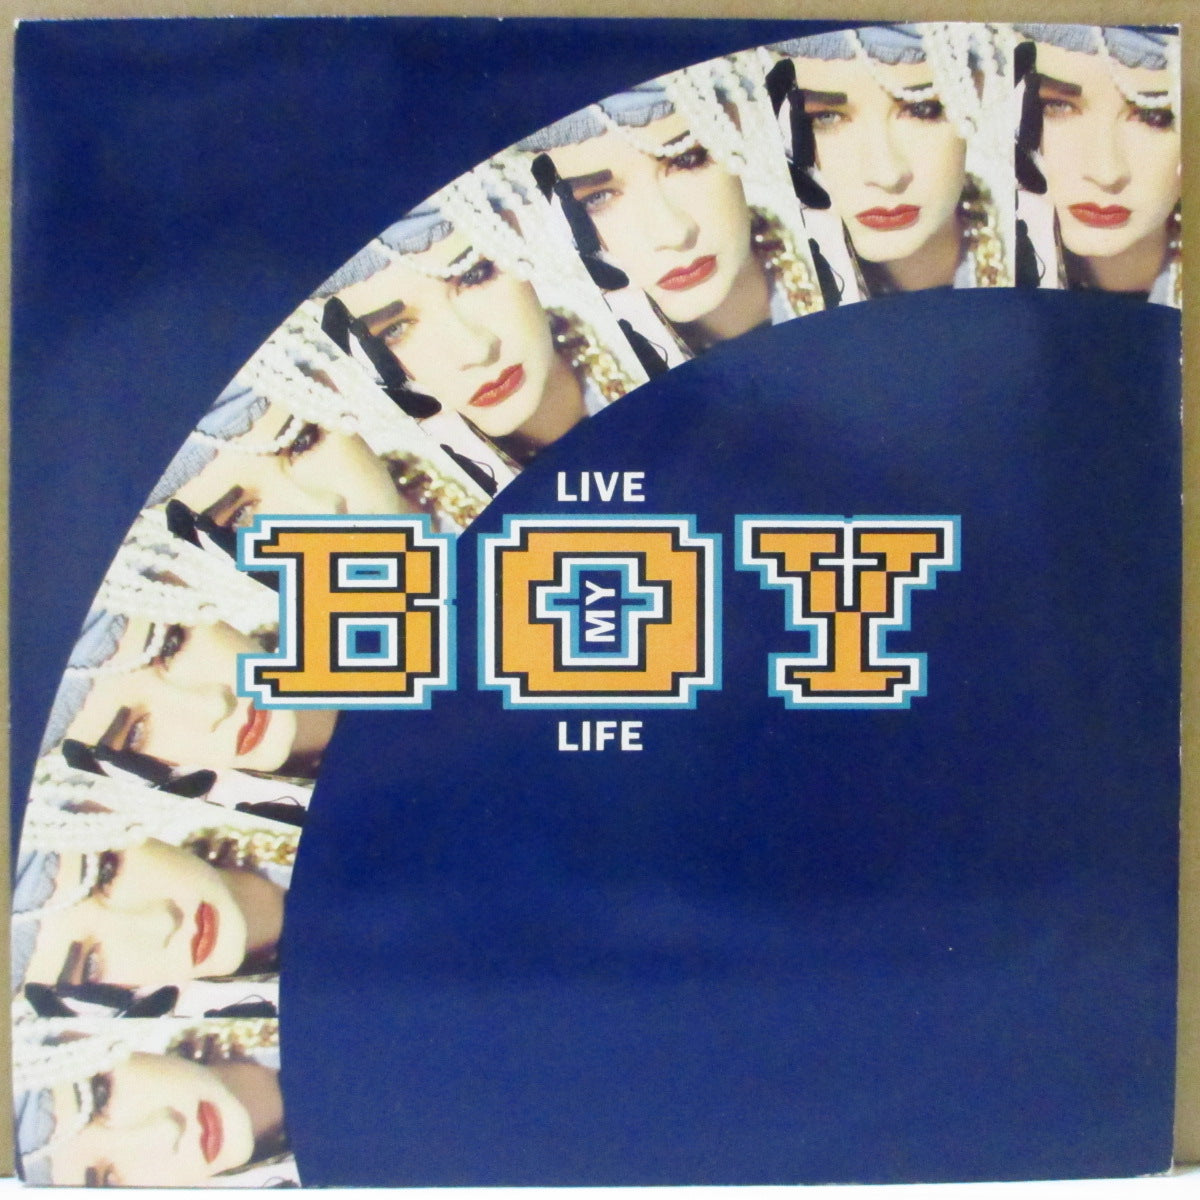 BOY GEORGE (ボーイ・ジョージ) - Live My Life (UK オリジナル・シルバープラスチックラベ 7